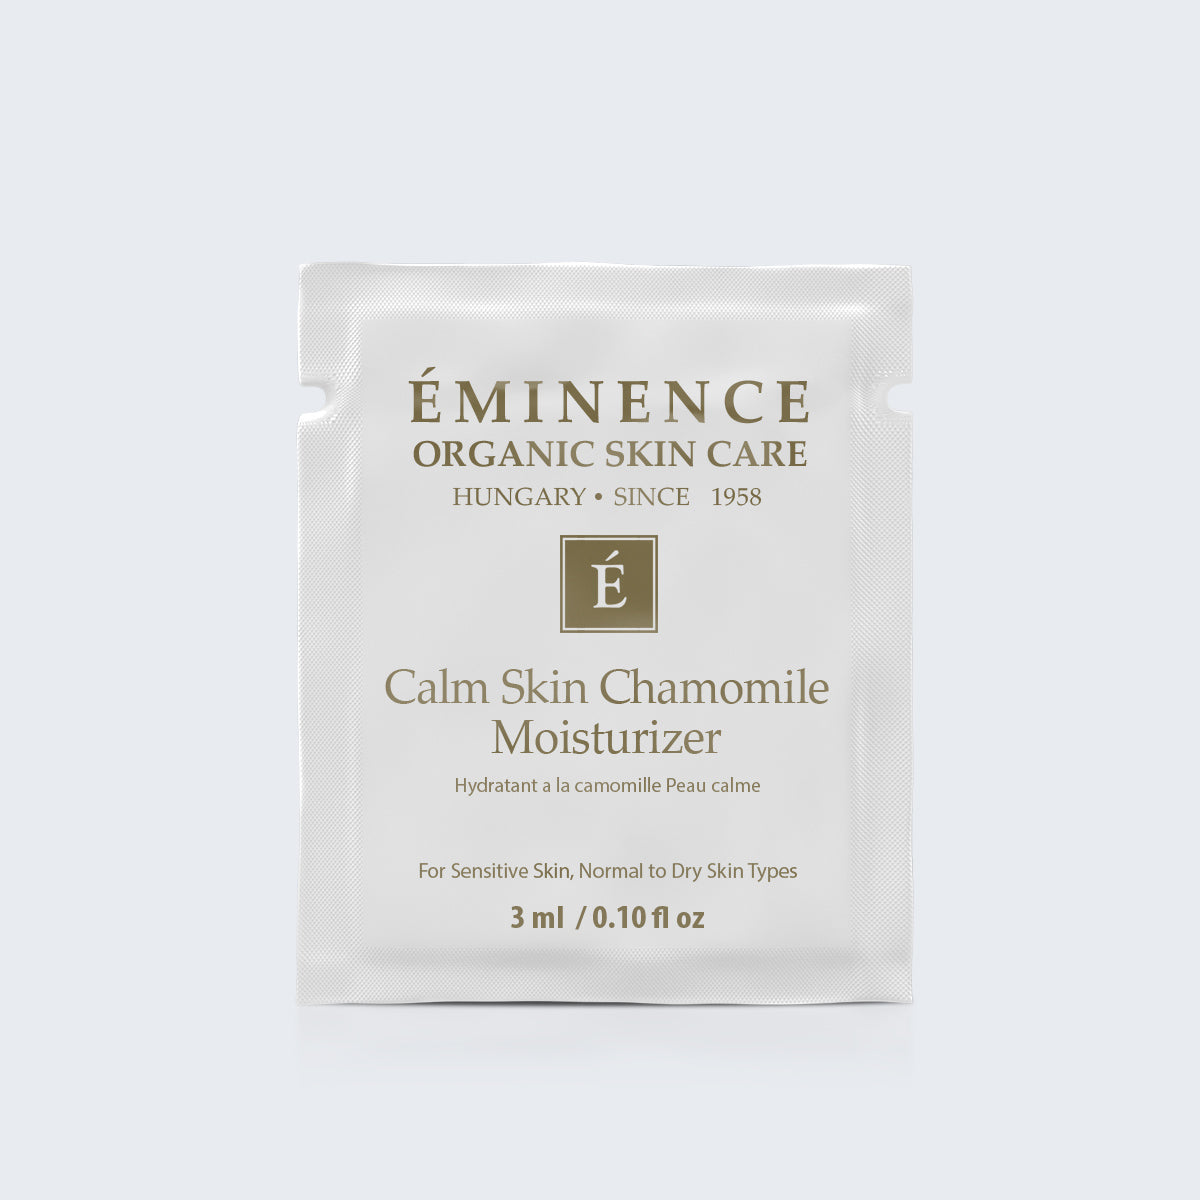 Eminence Organics Calm Skin Chamomile Moisturizer Card Sample